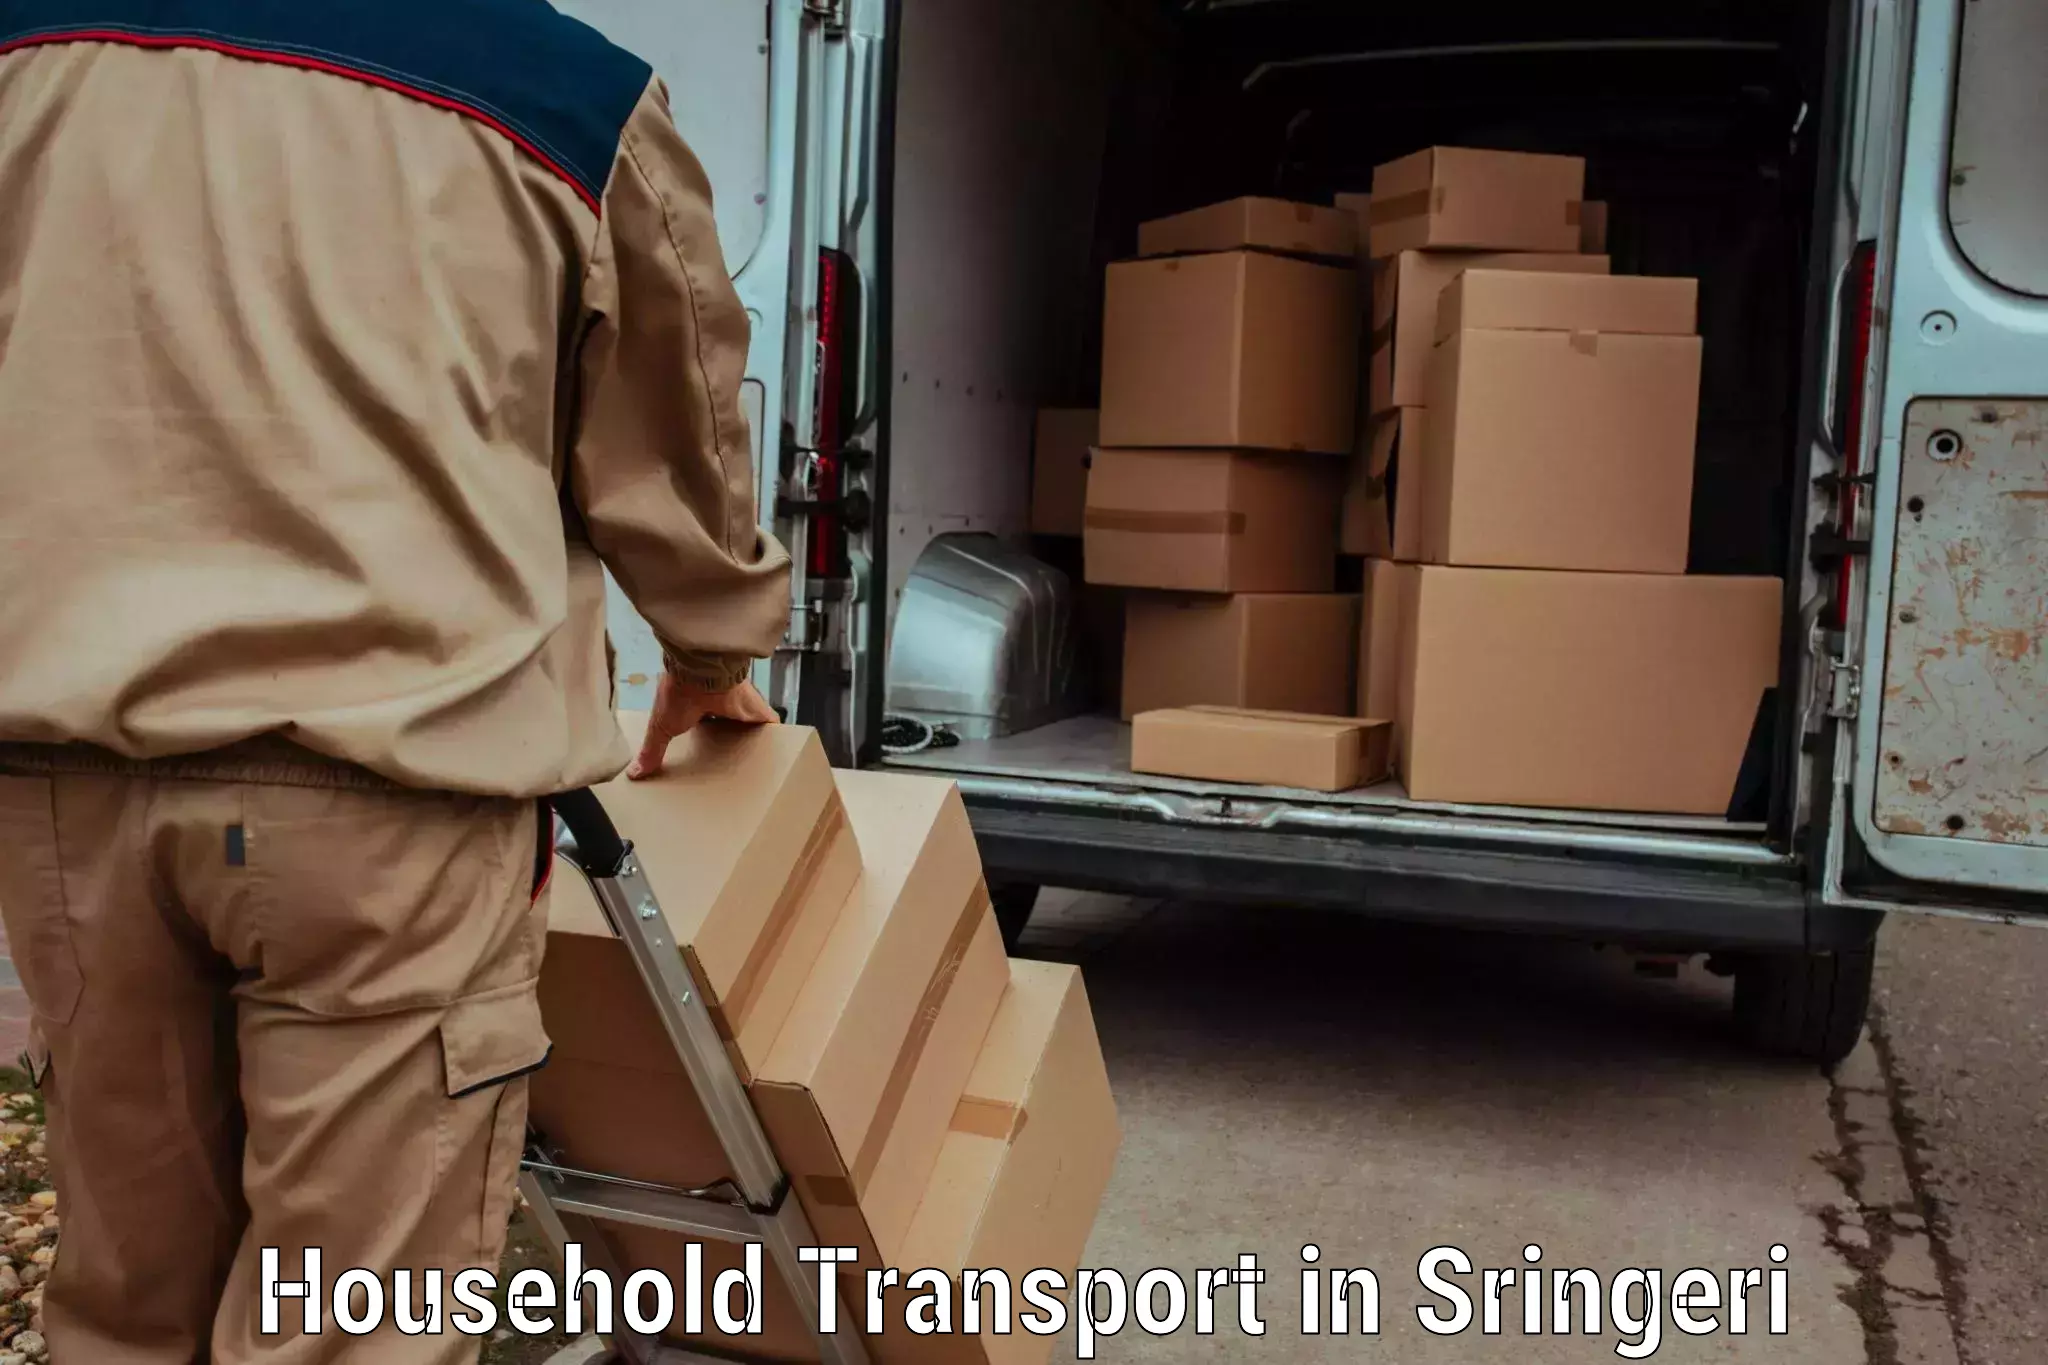 Household goods transport service in Sringeri